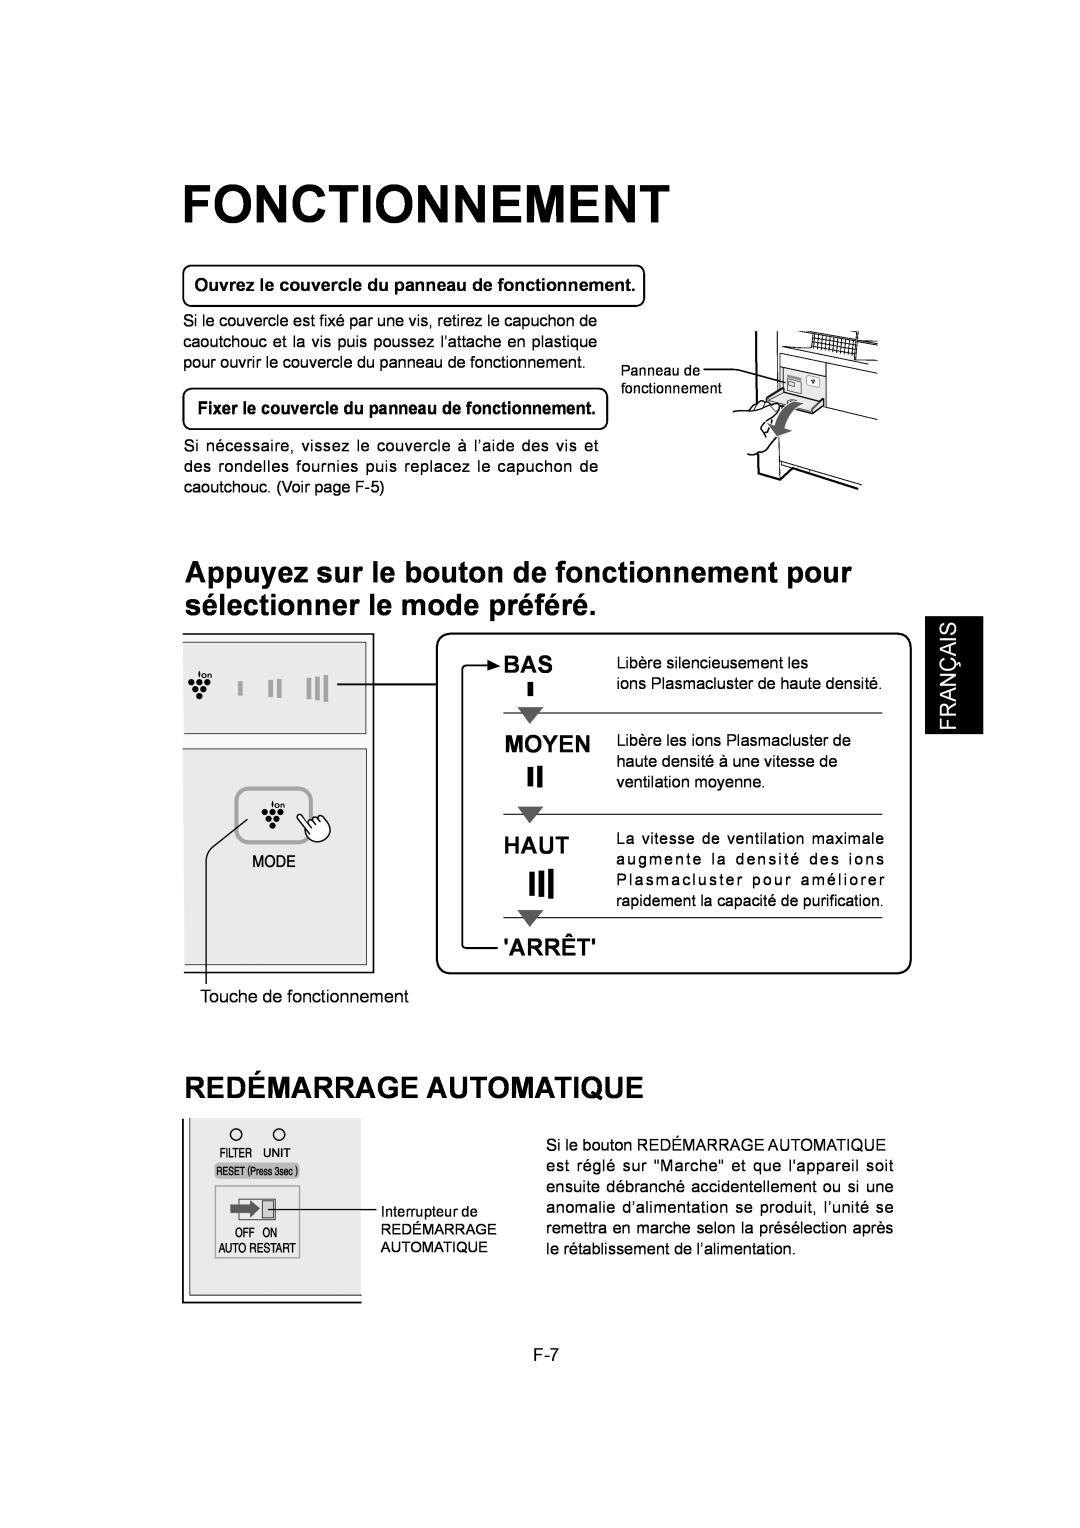 Sharp IG-A40U operation manual Fonctionnement, Redémarrage Automatique, Moyen, Haut, Arrêt, Français 